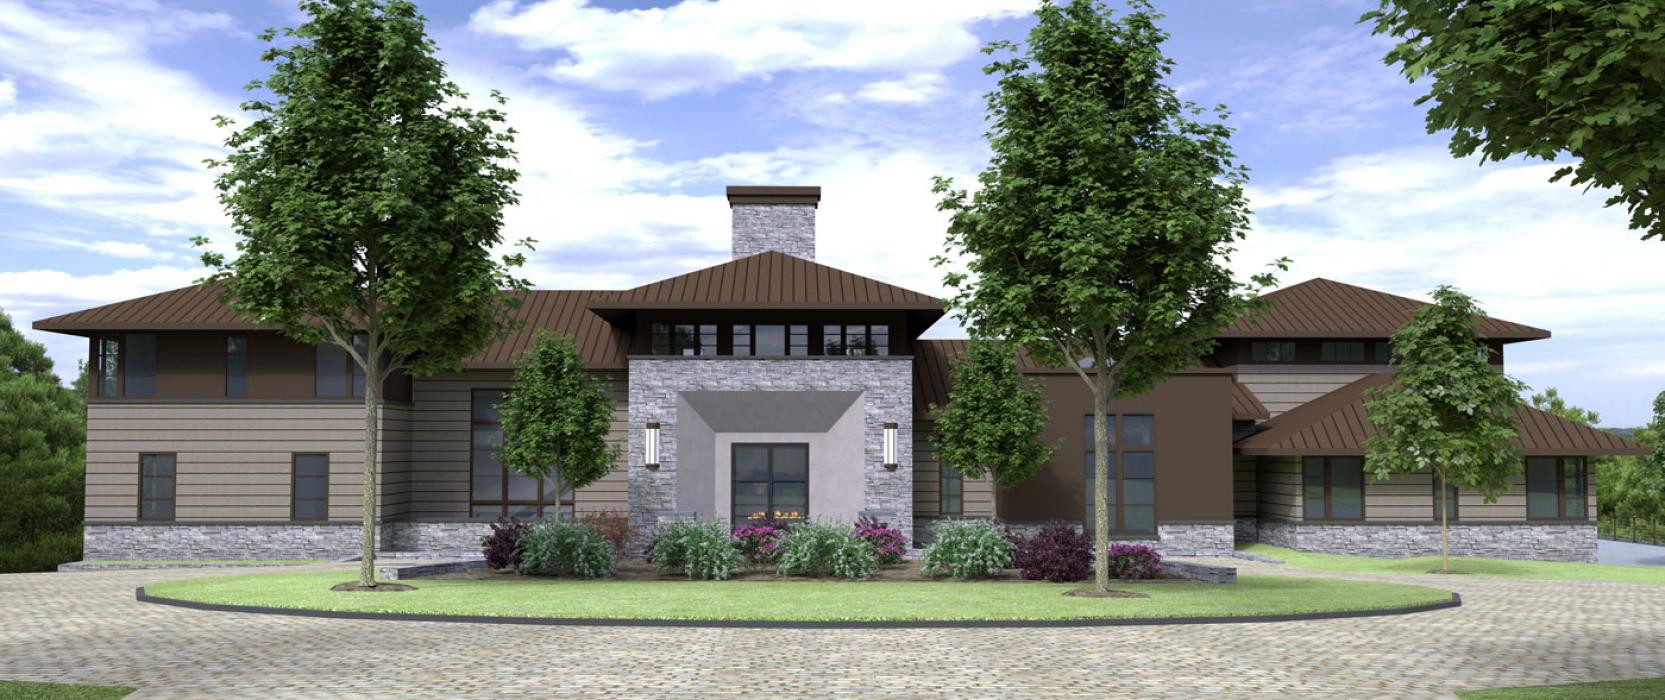 Modern Prairie style home